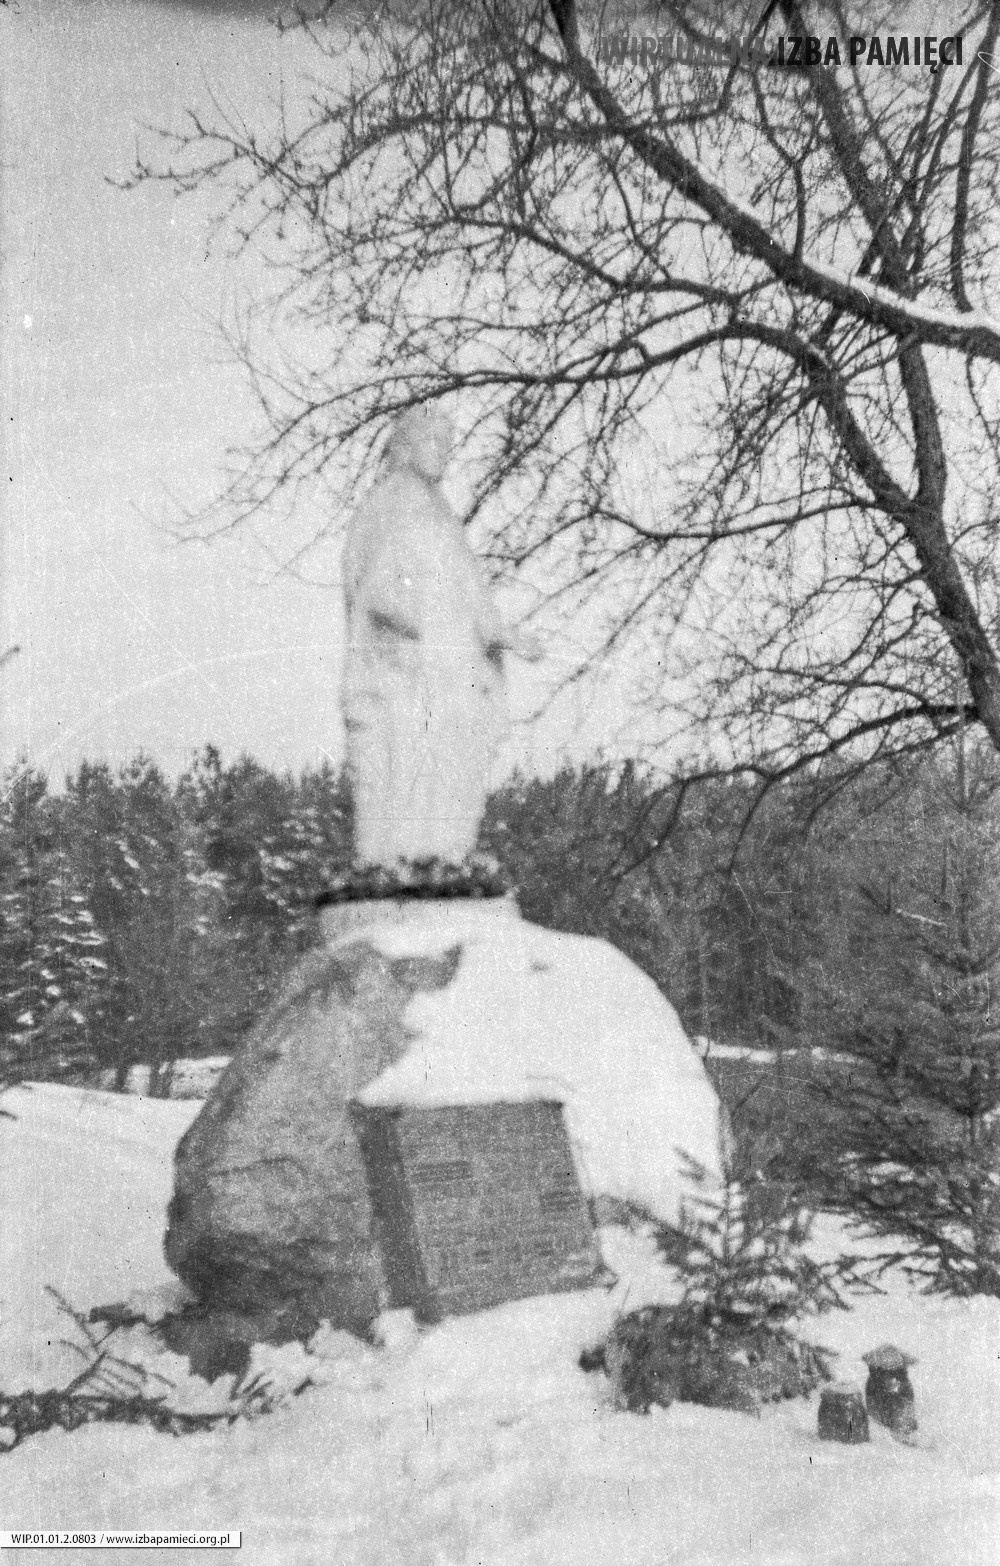 1984. Figurka Matki Bożej w Mołodyczu. Pamiątka jubileuszu 400-lecia wsi.